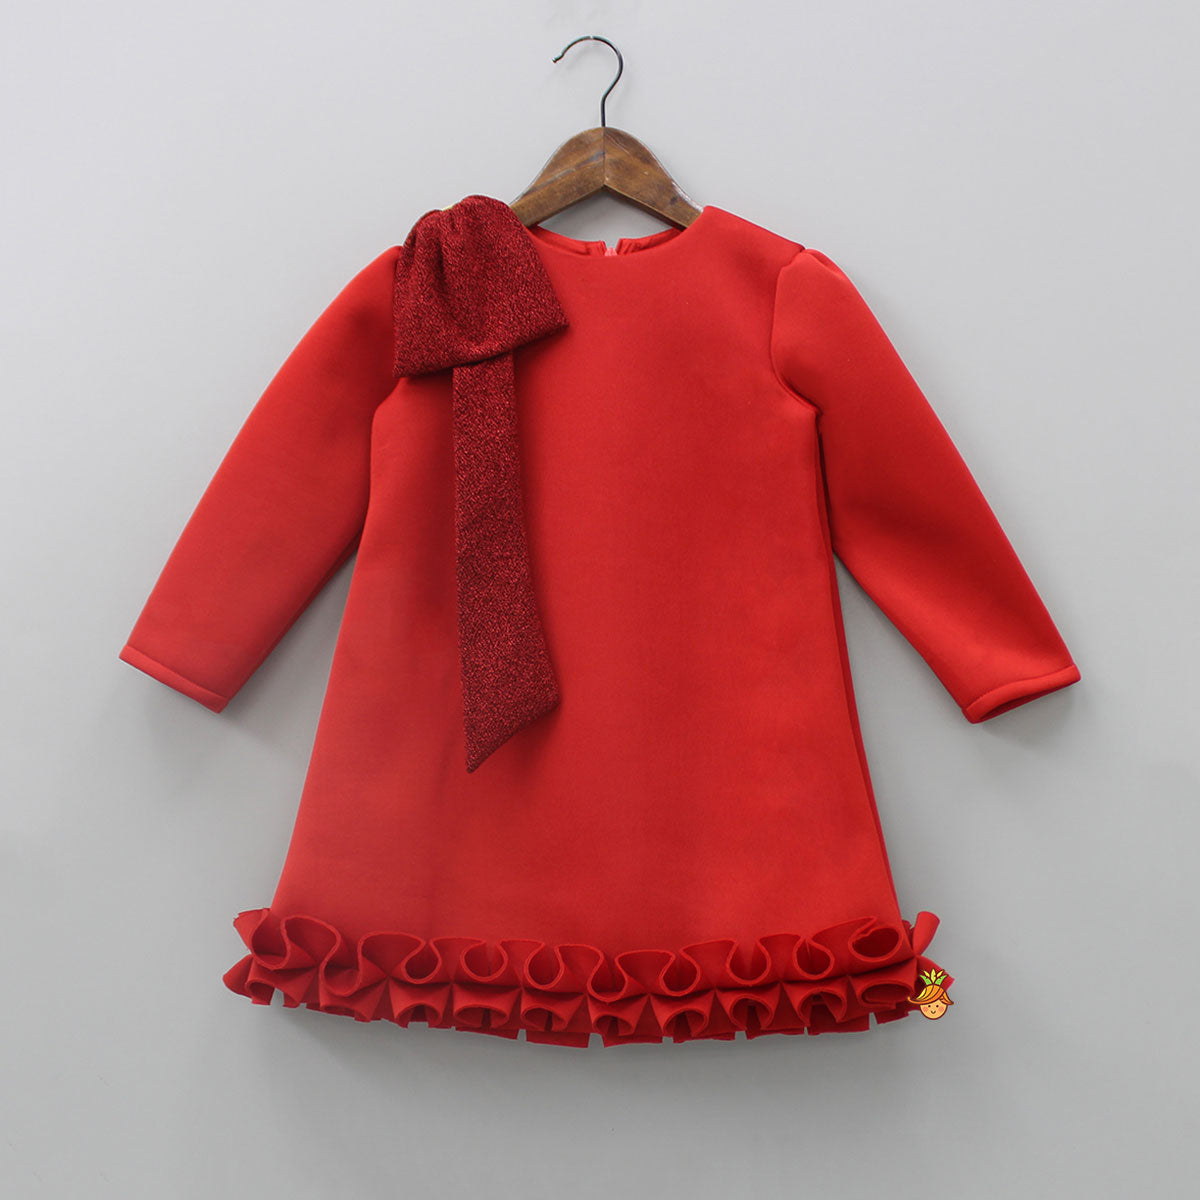 Pre Order: Shimmery Bow Enhanced Red Neoprene Fancy Dress